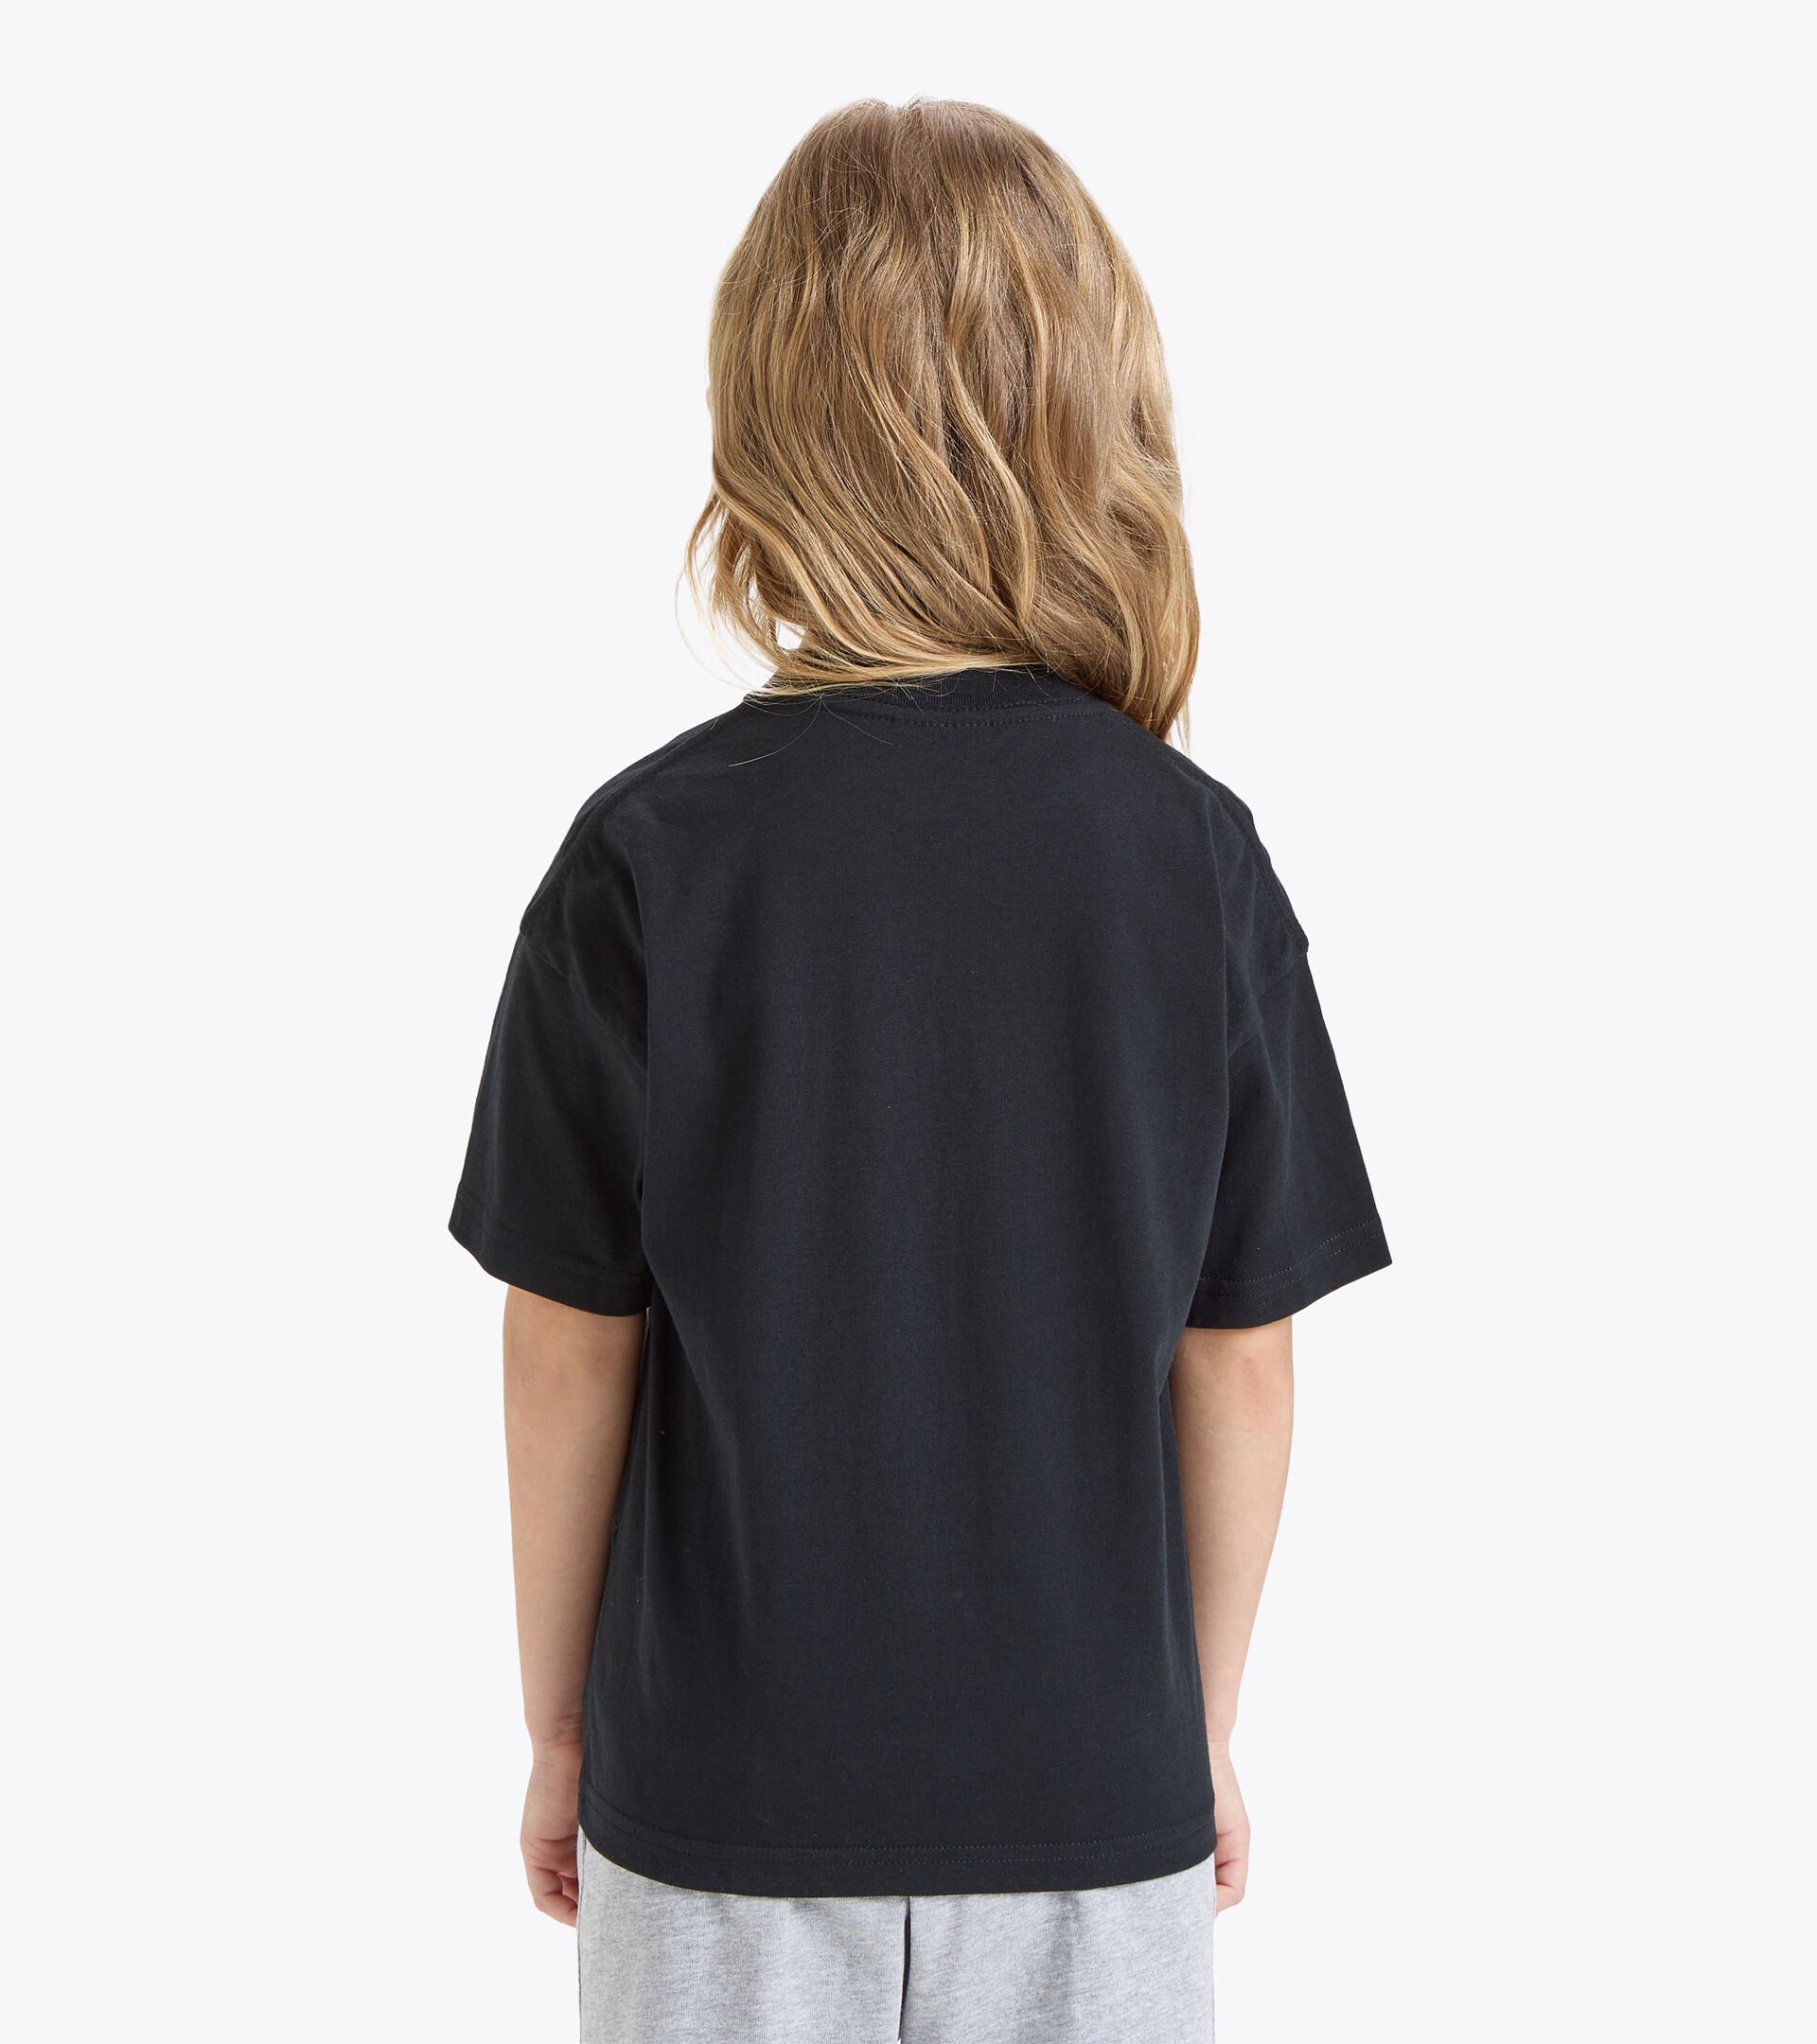 T-shirt de sport - Enfants
 JU.T-SHIRT SS BL NOIR - Diadora